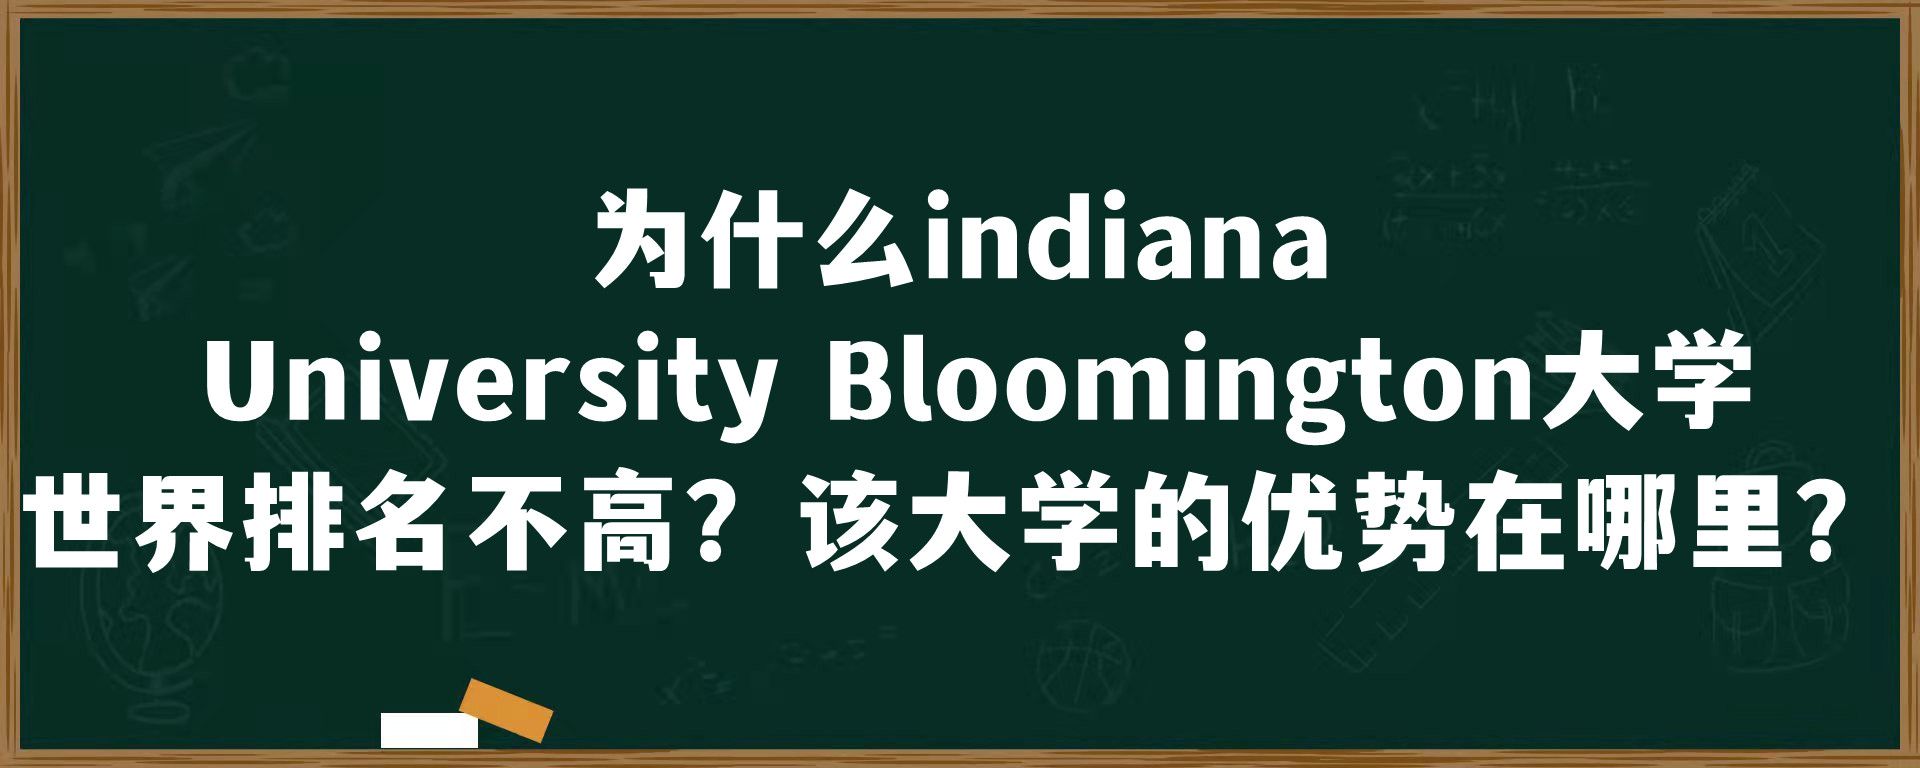 为什么indiana University Bloomington大学世界排名不高？该大学的优势在哪里？